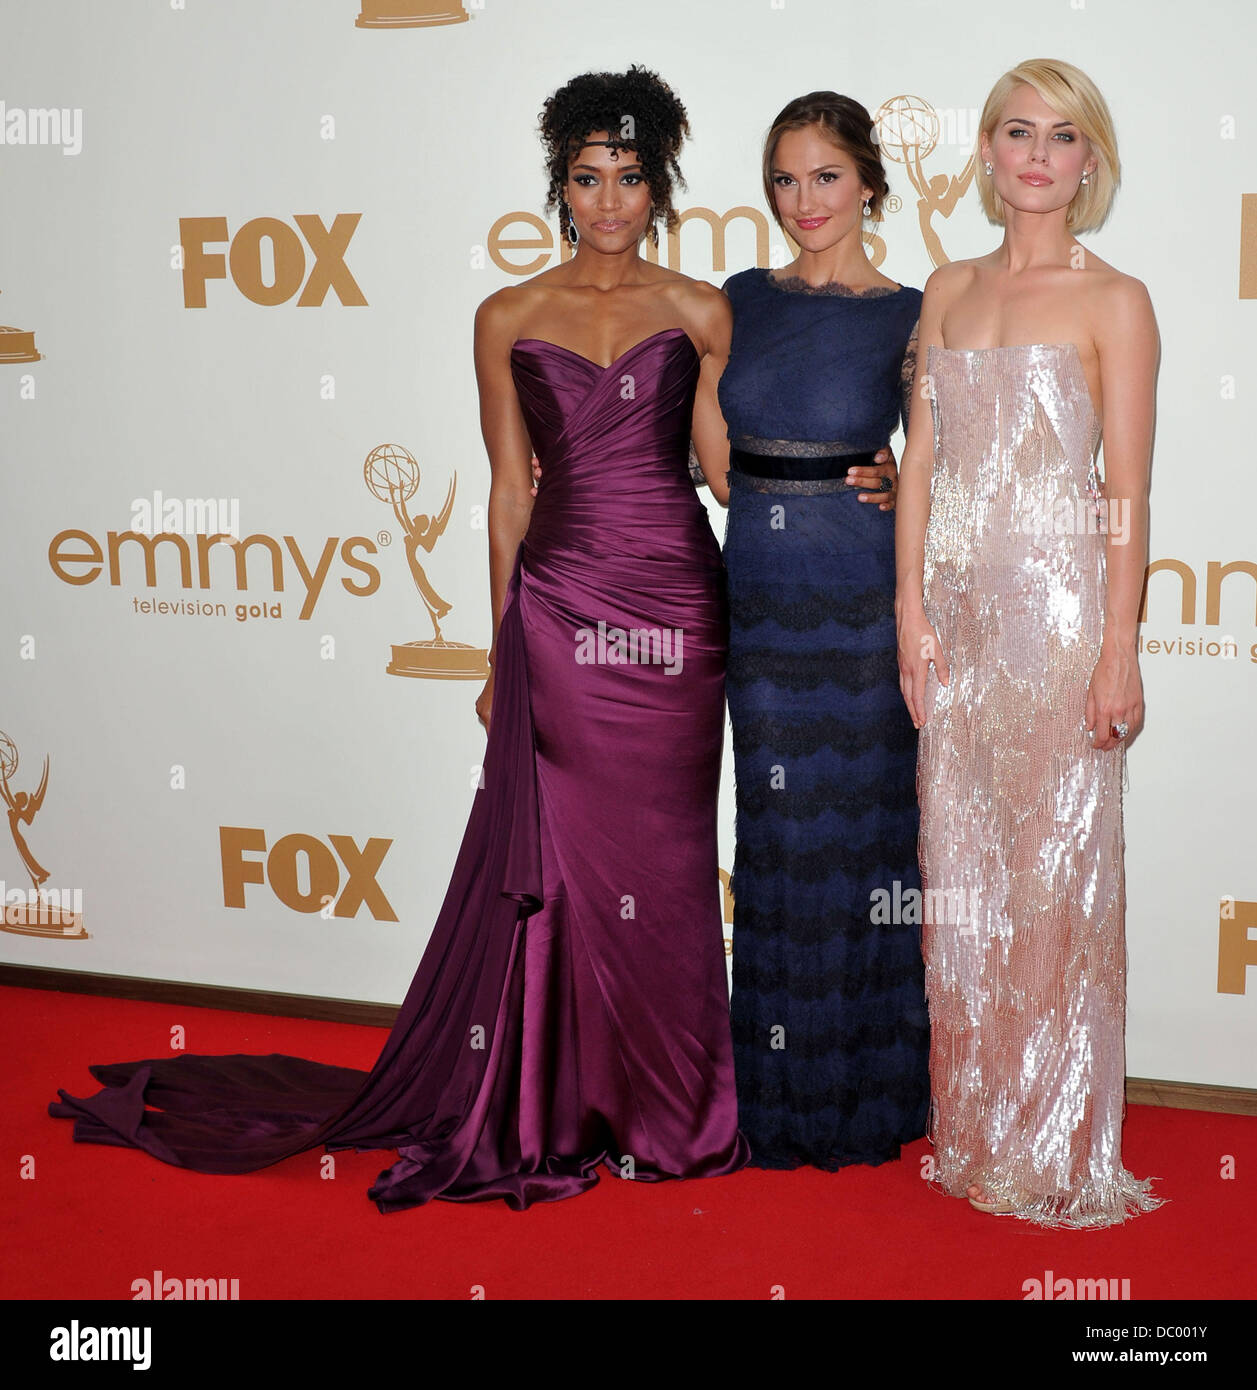 Minka Kelly, Rachael Taylor und Annie Ilonzeh der 63rd Primetime Emmy Awards im Nokia Theatre L.A. LIVE - Ankünfte statt. Los Angeles, Kalifornien - 18.09.11 Stockfoto